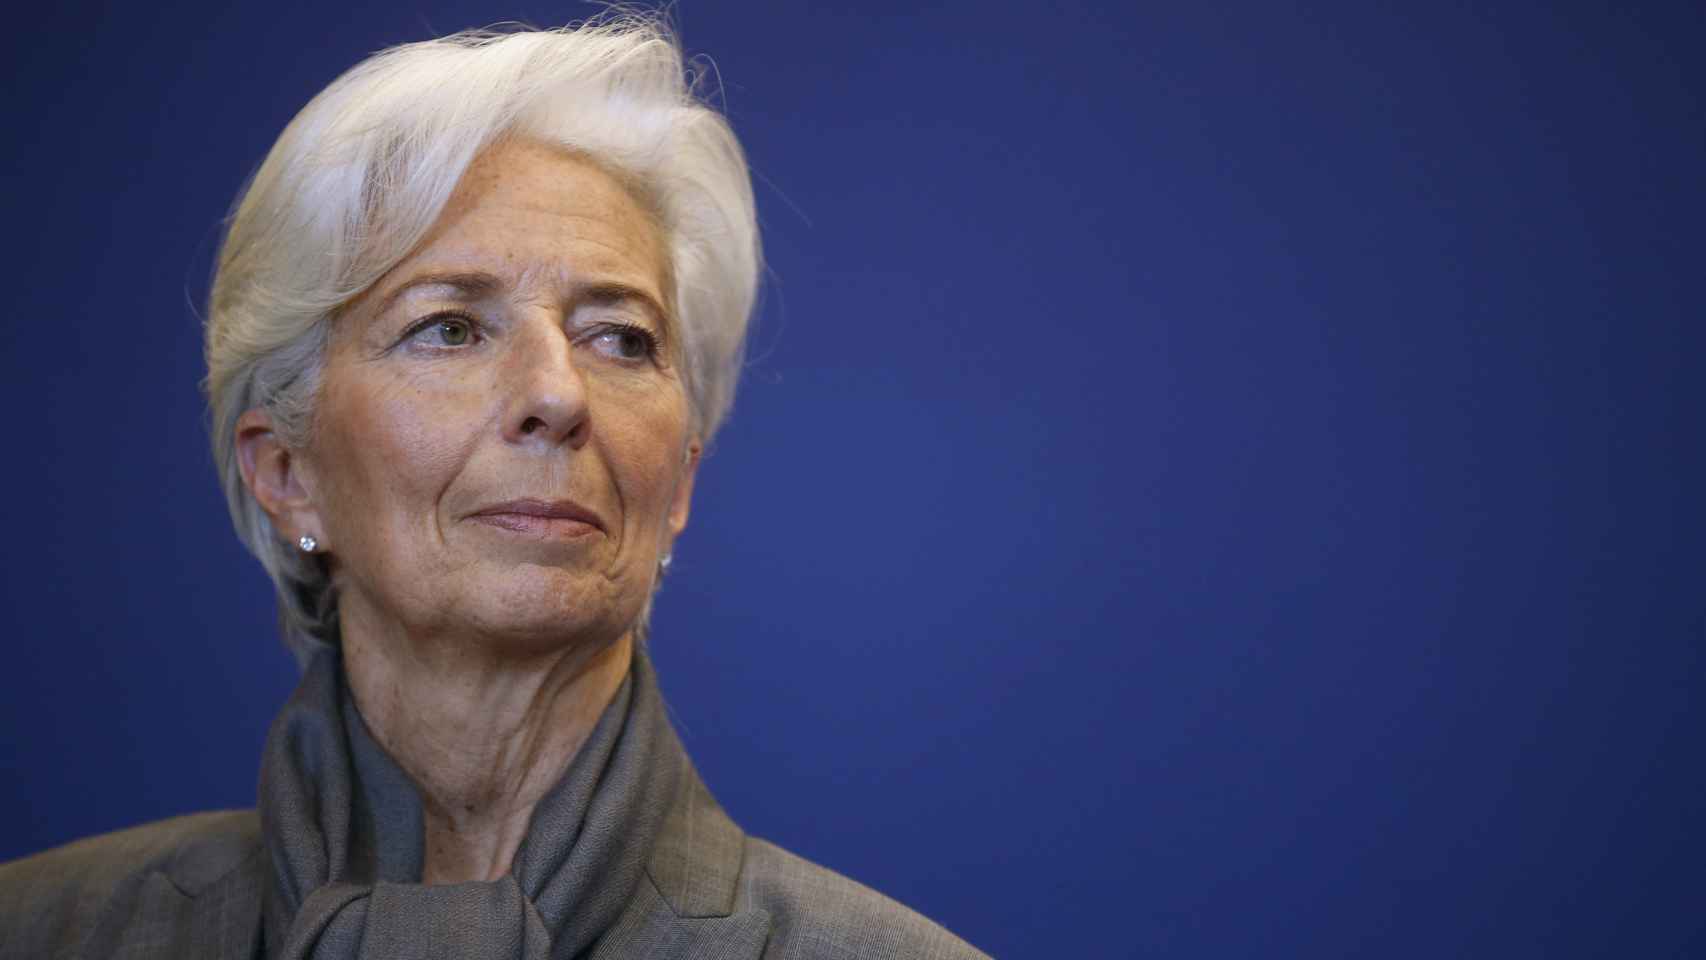 La directora gerente del FMI rechaza las acusaciones de Atenas